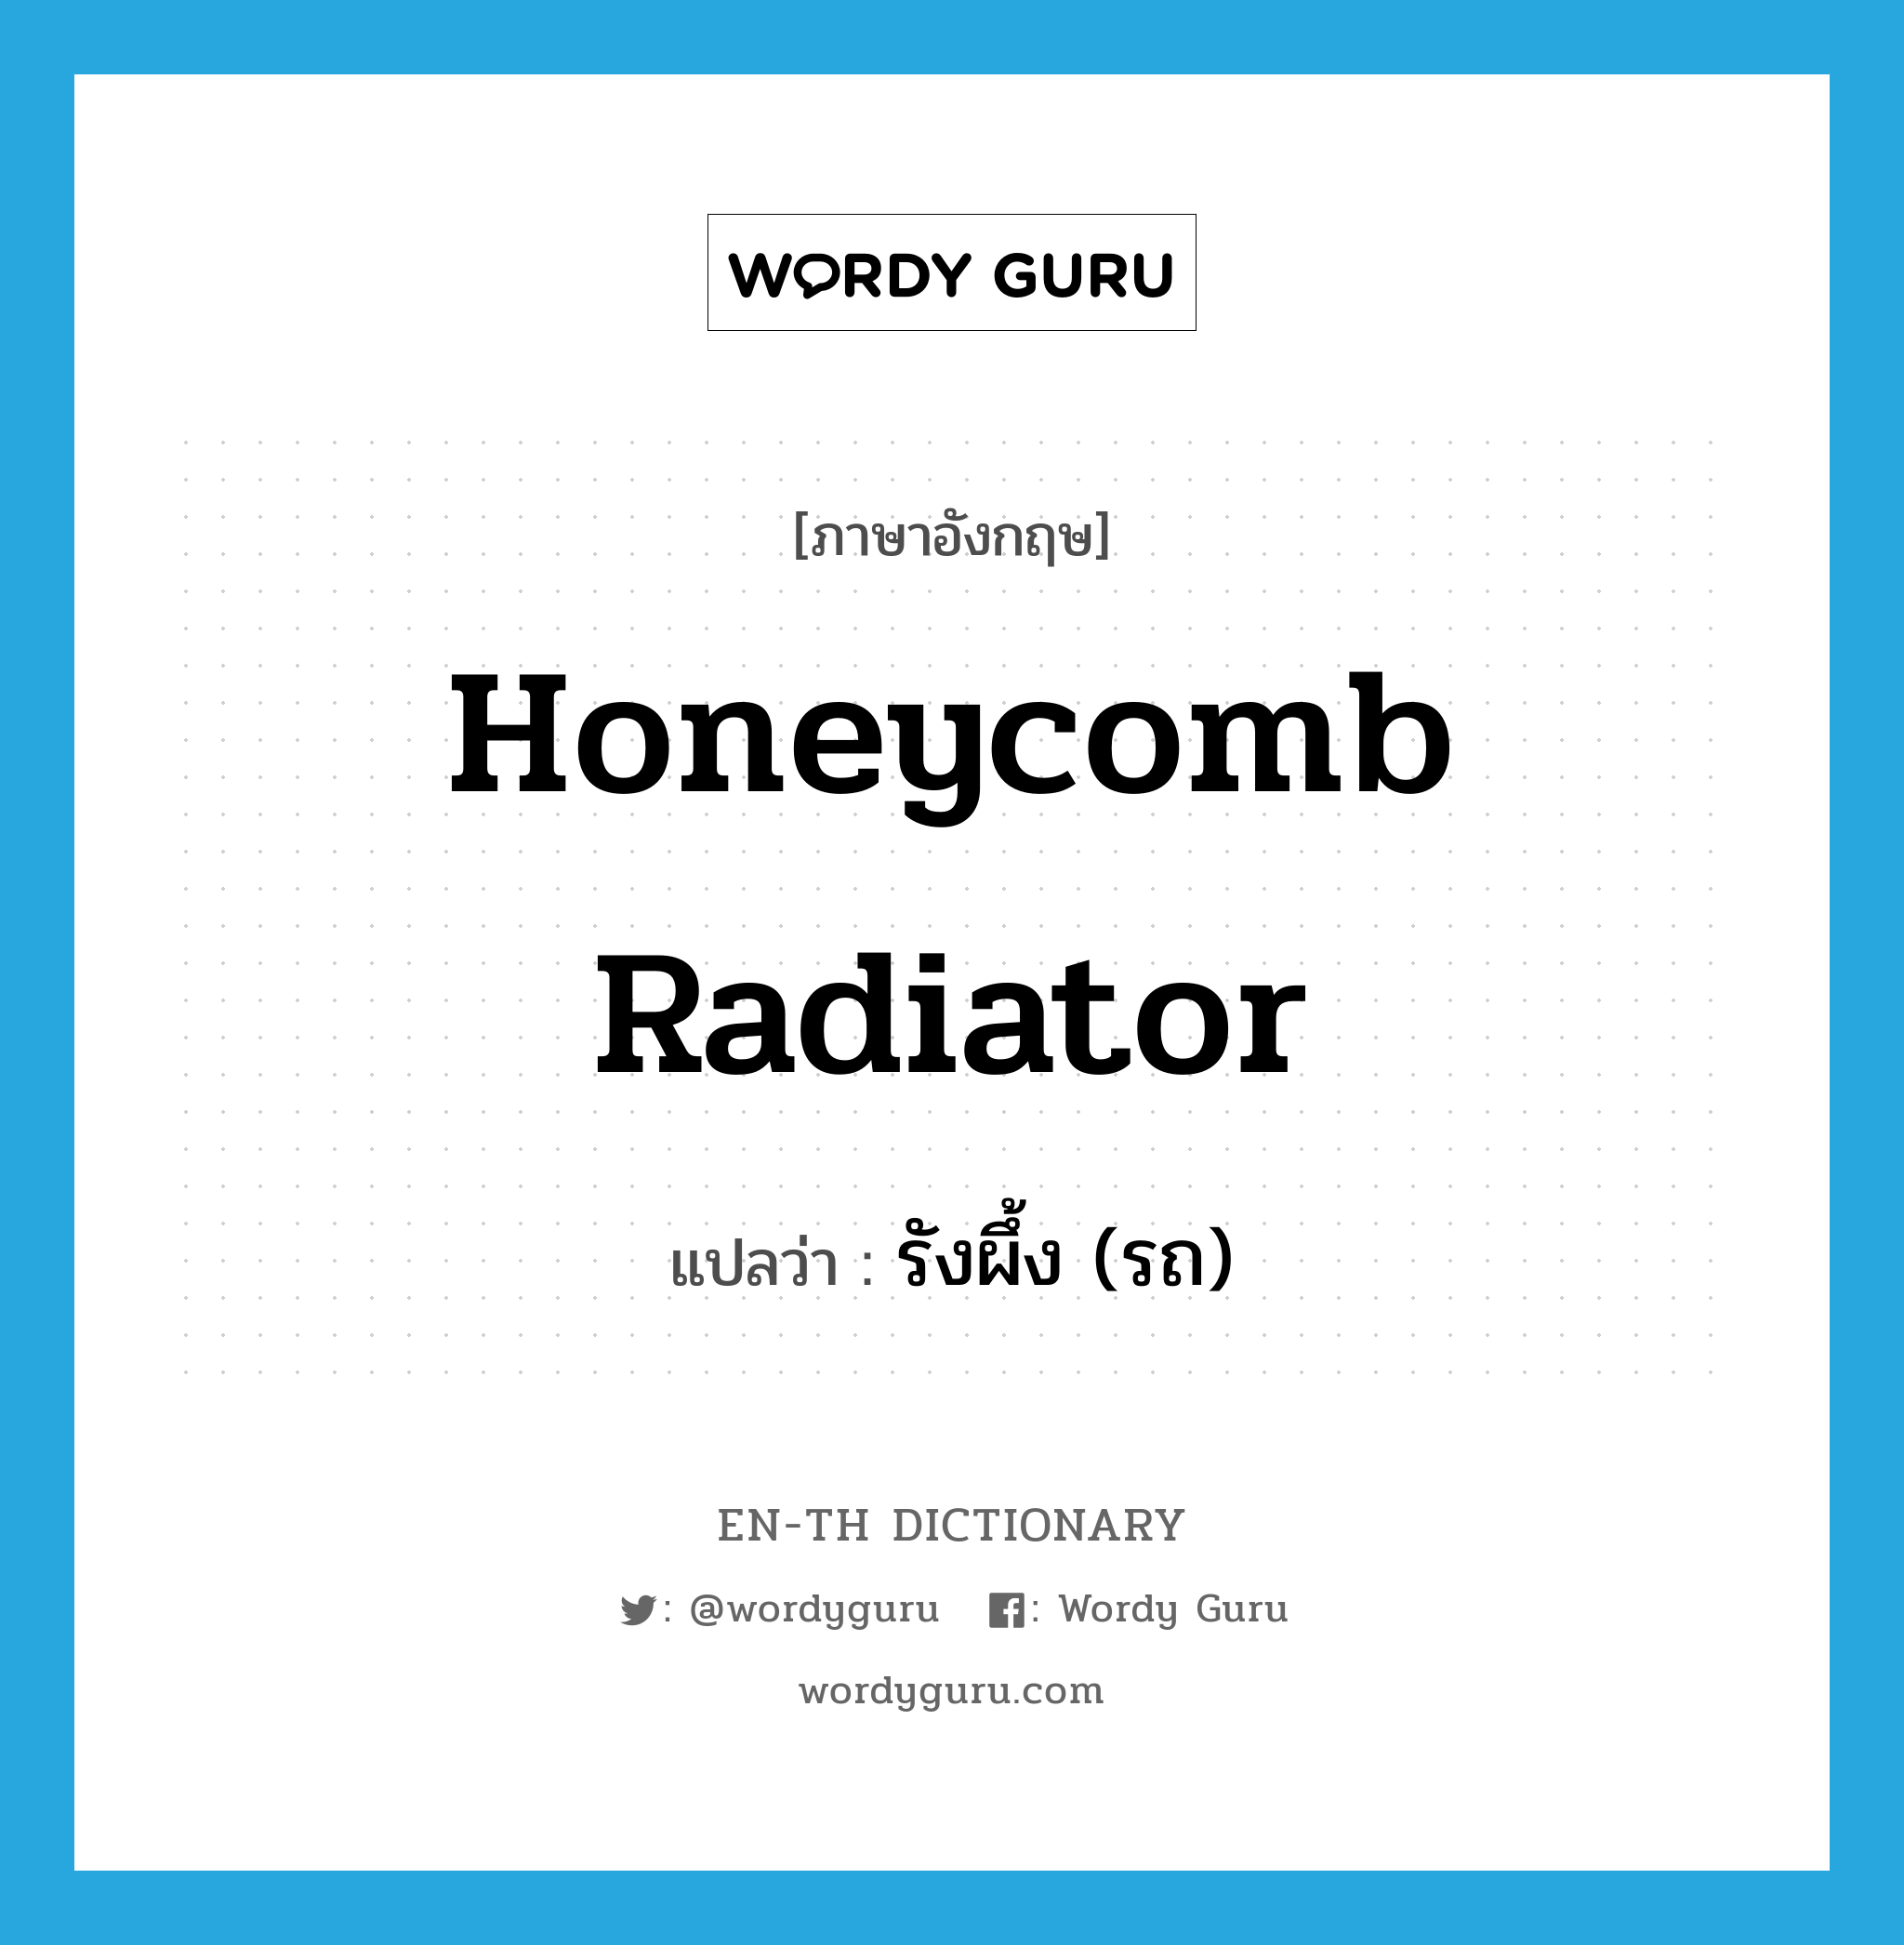 รังผึ้ง (รถ) ภาษาอังกฤษ?, คำศัพท์ภาษาอังกฤษ รังผึ้ง (รถ) แปลว่า honeycomb radiator ประเภท N หมวด N